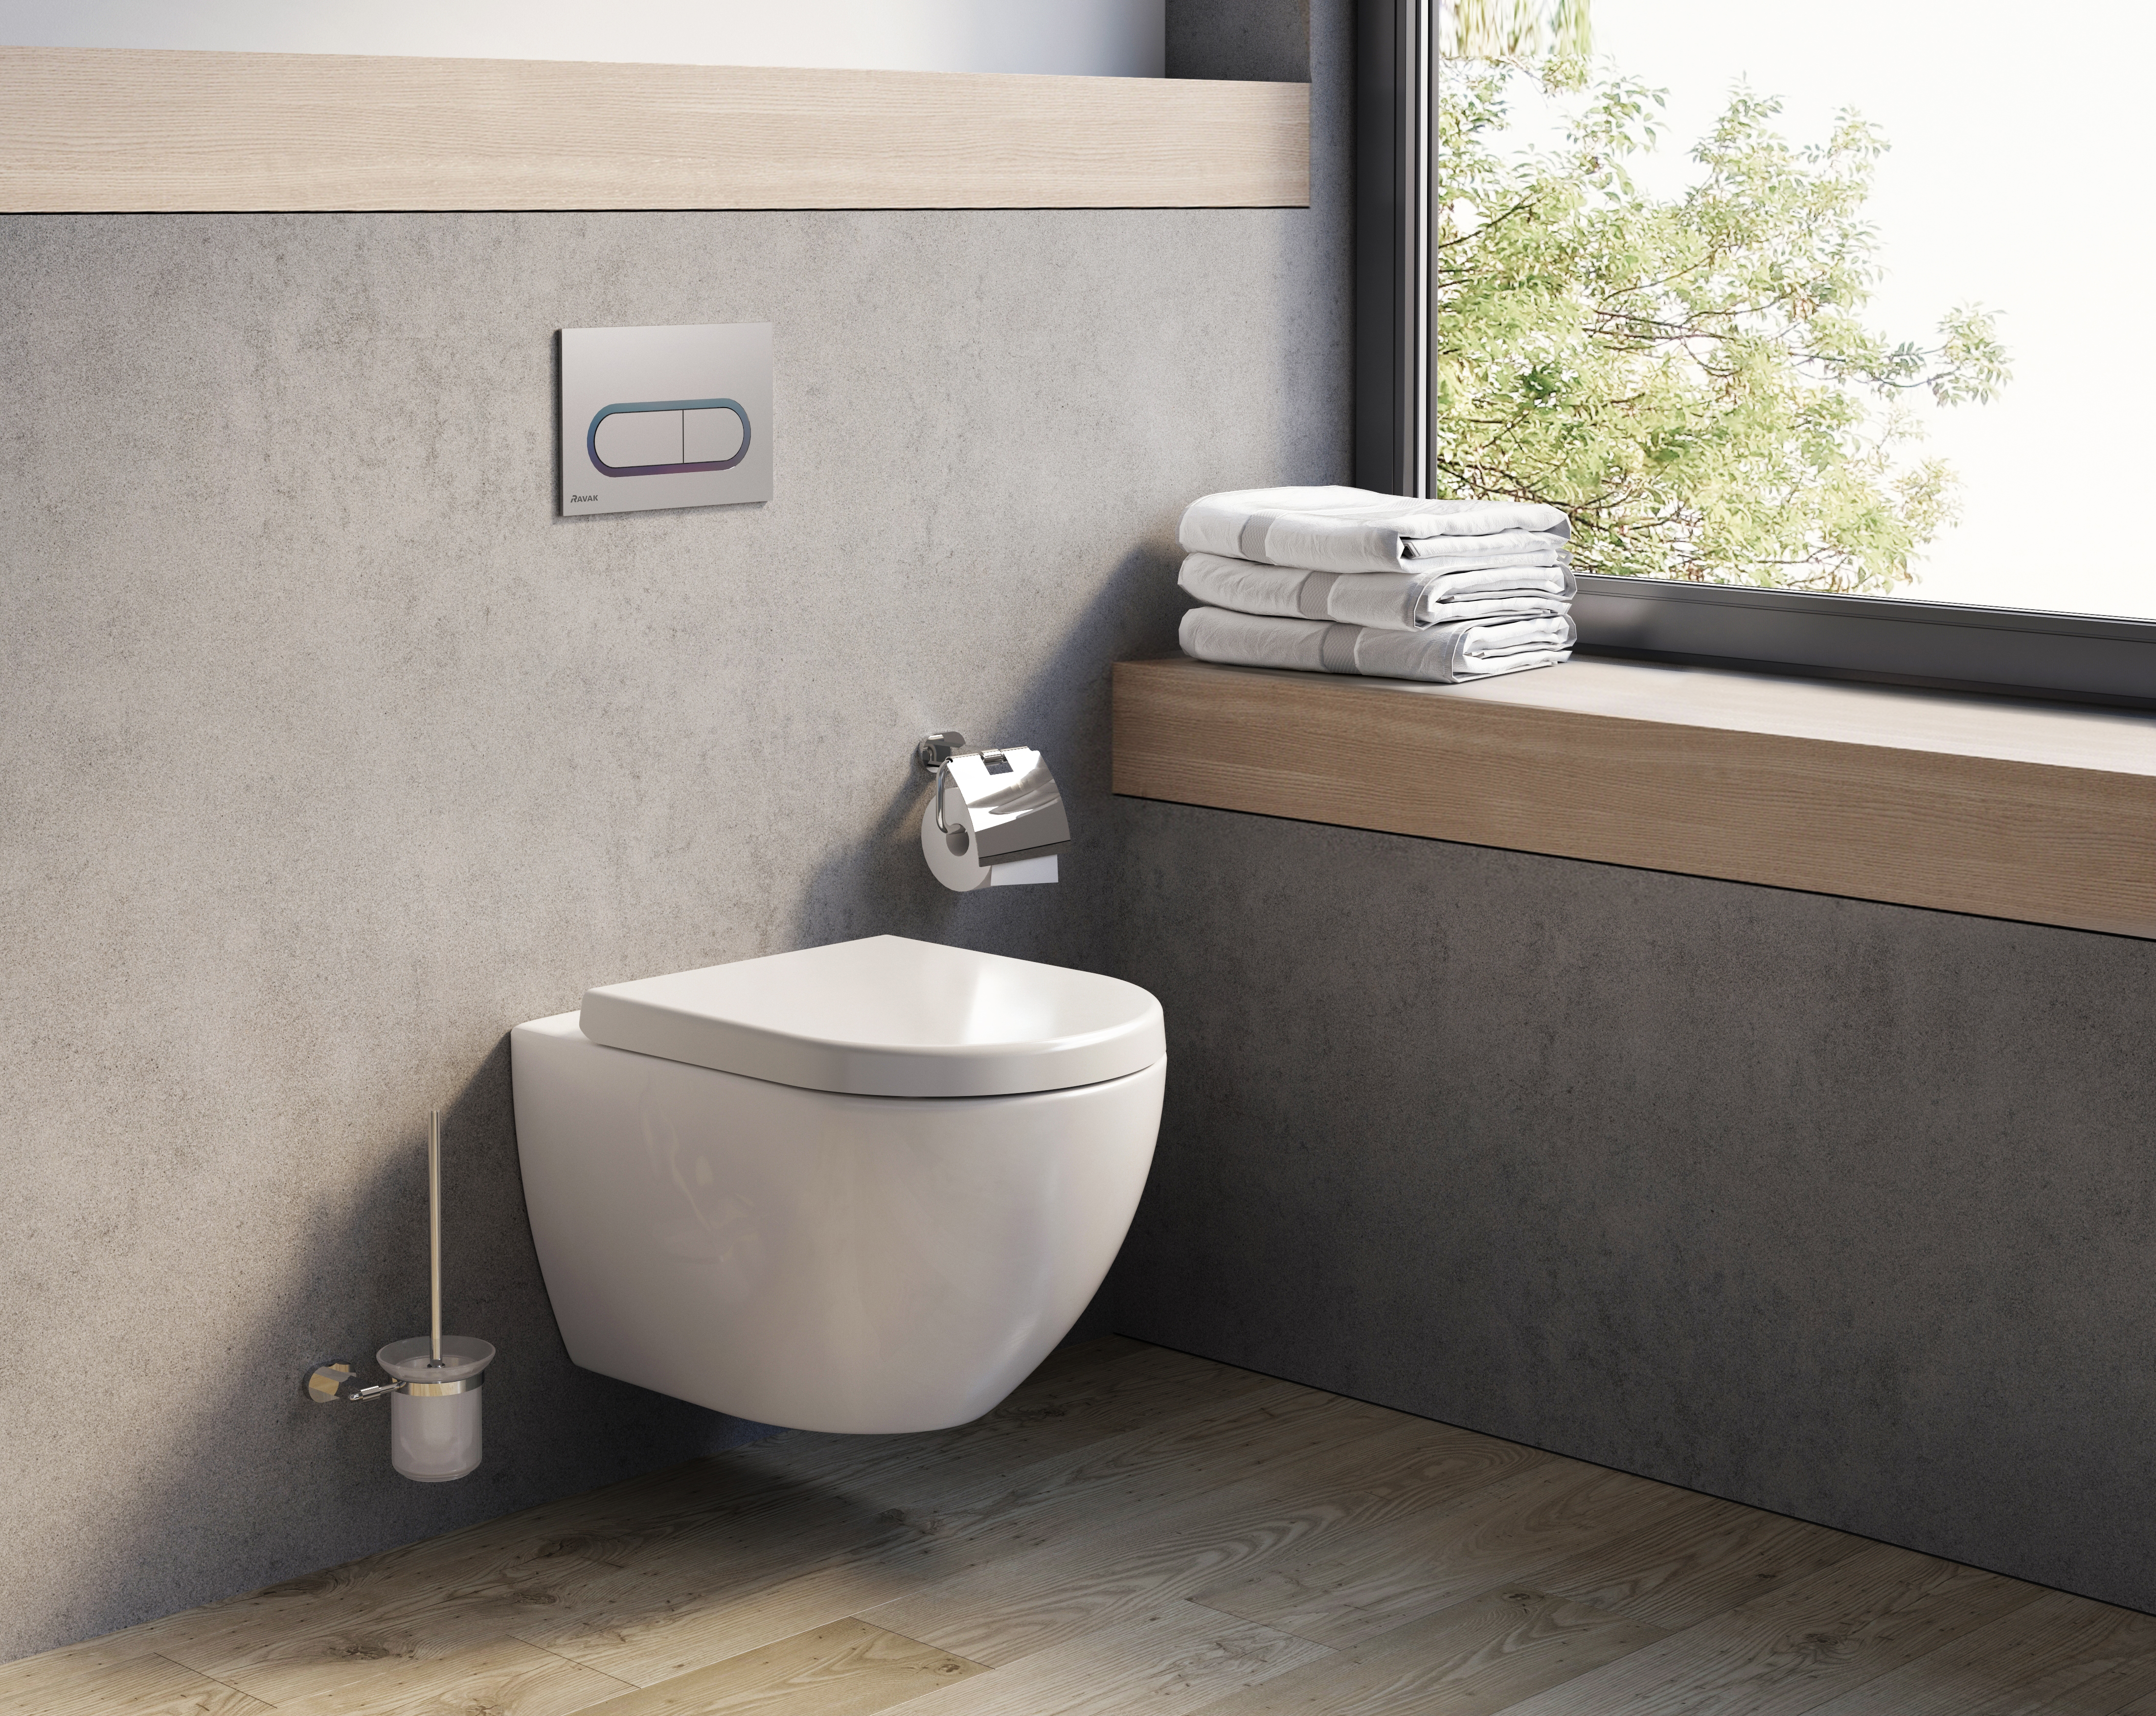 Az ideális wc modern, könnyen tisztítható és megtartja további praktikus funkcióit. Ilyen a wc helyiségbe javasolt RAVAK Uni Chrome.